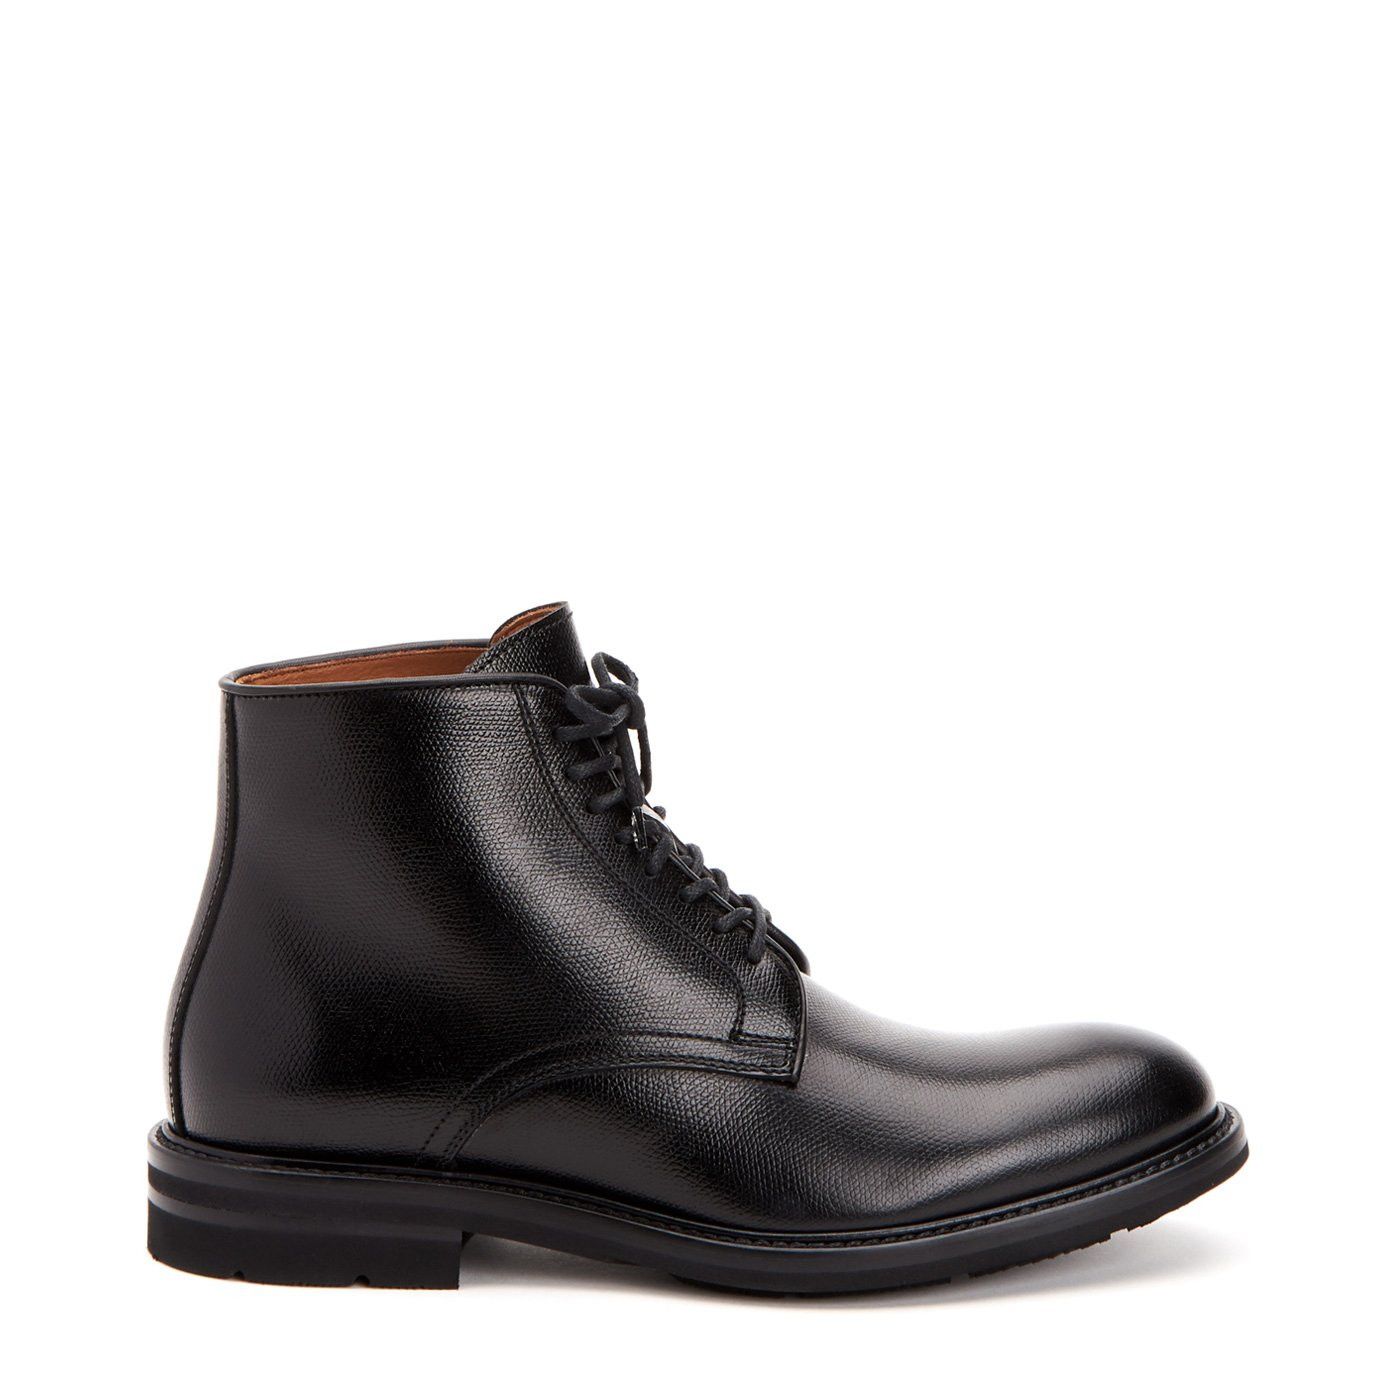 Aquatalia RENZO Black Leather Chukka Boots Weatherproof | Grailed